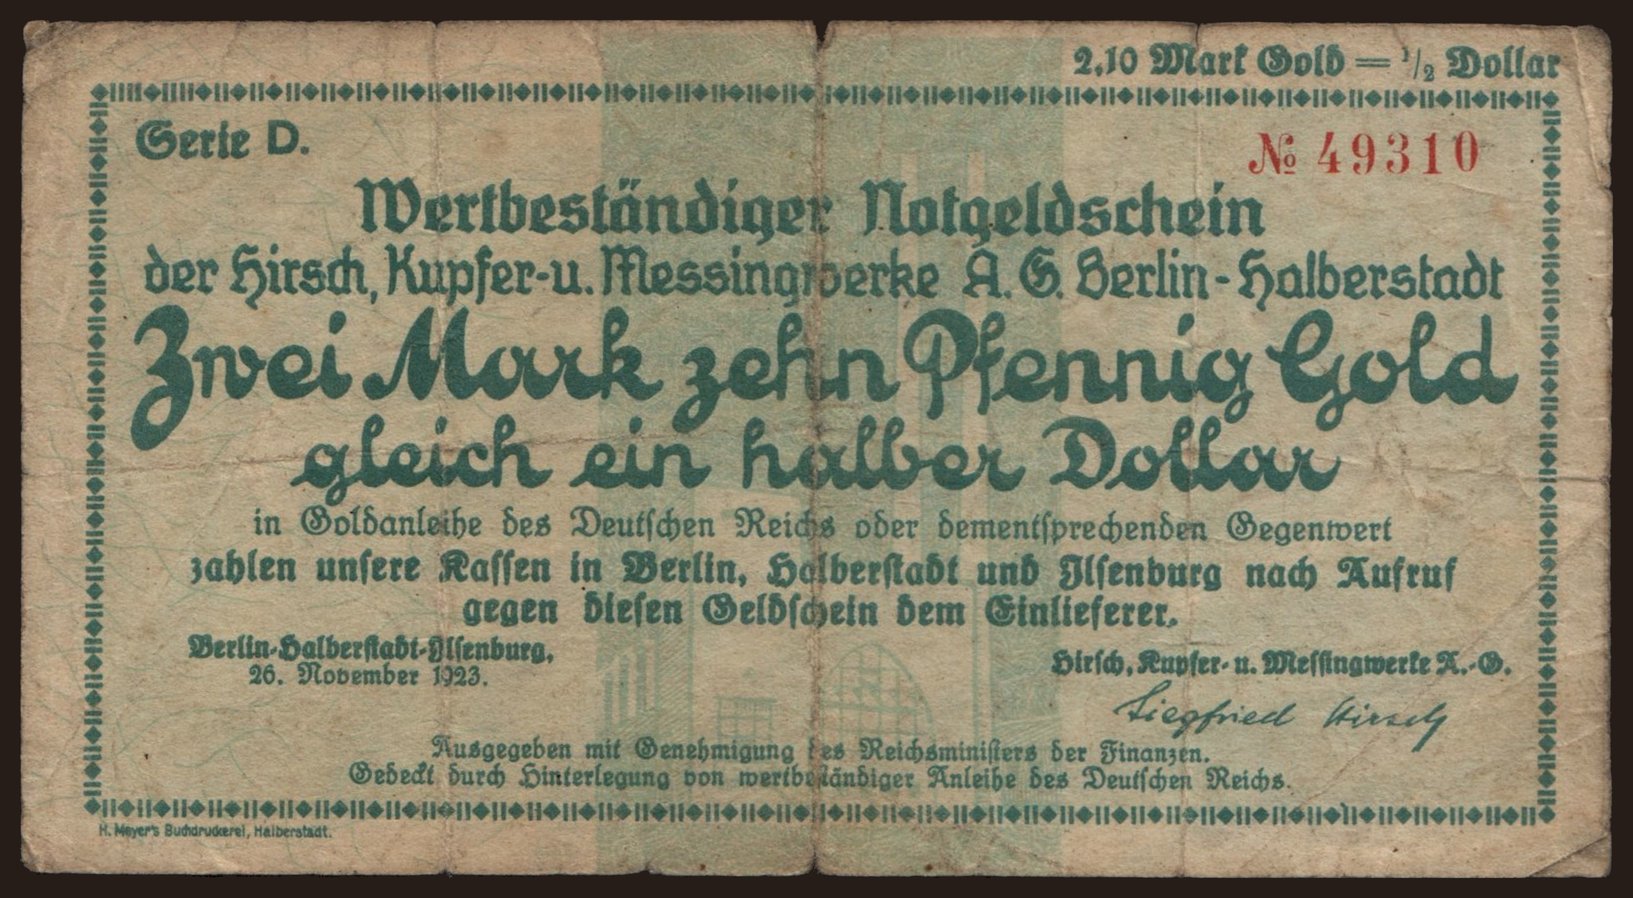 Berlin-Halberstadt-Ilsenburg/ Hirsch, Kupfer- und Messingwerke AG Berlin-Halberstadt, 2.10 Mark Gold, 1923